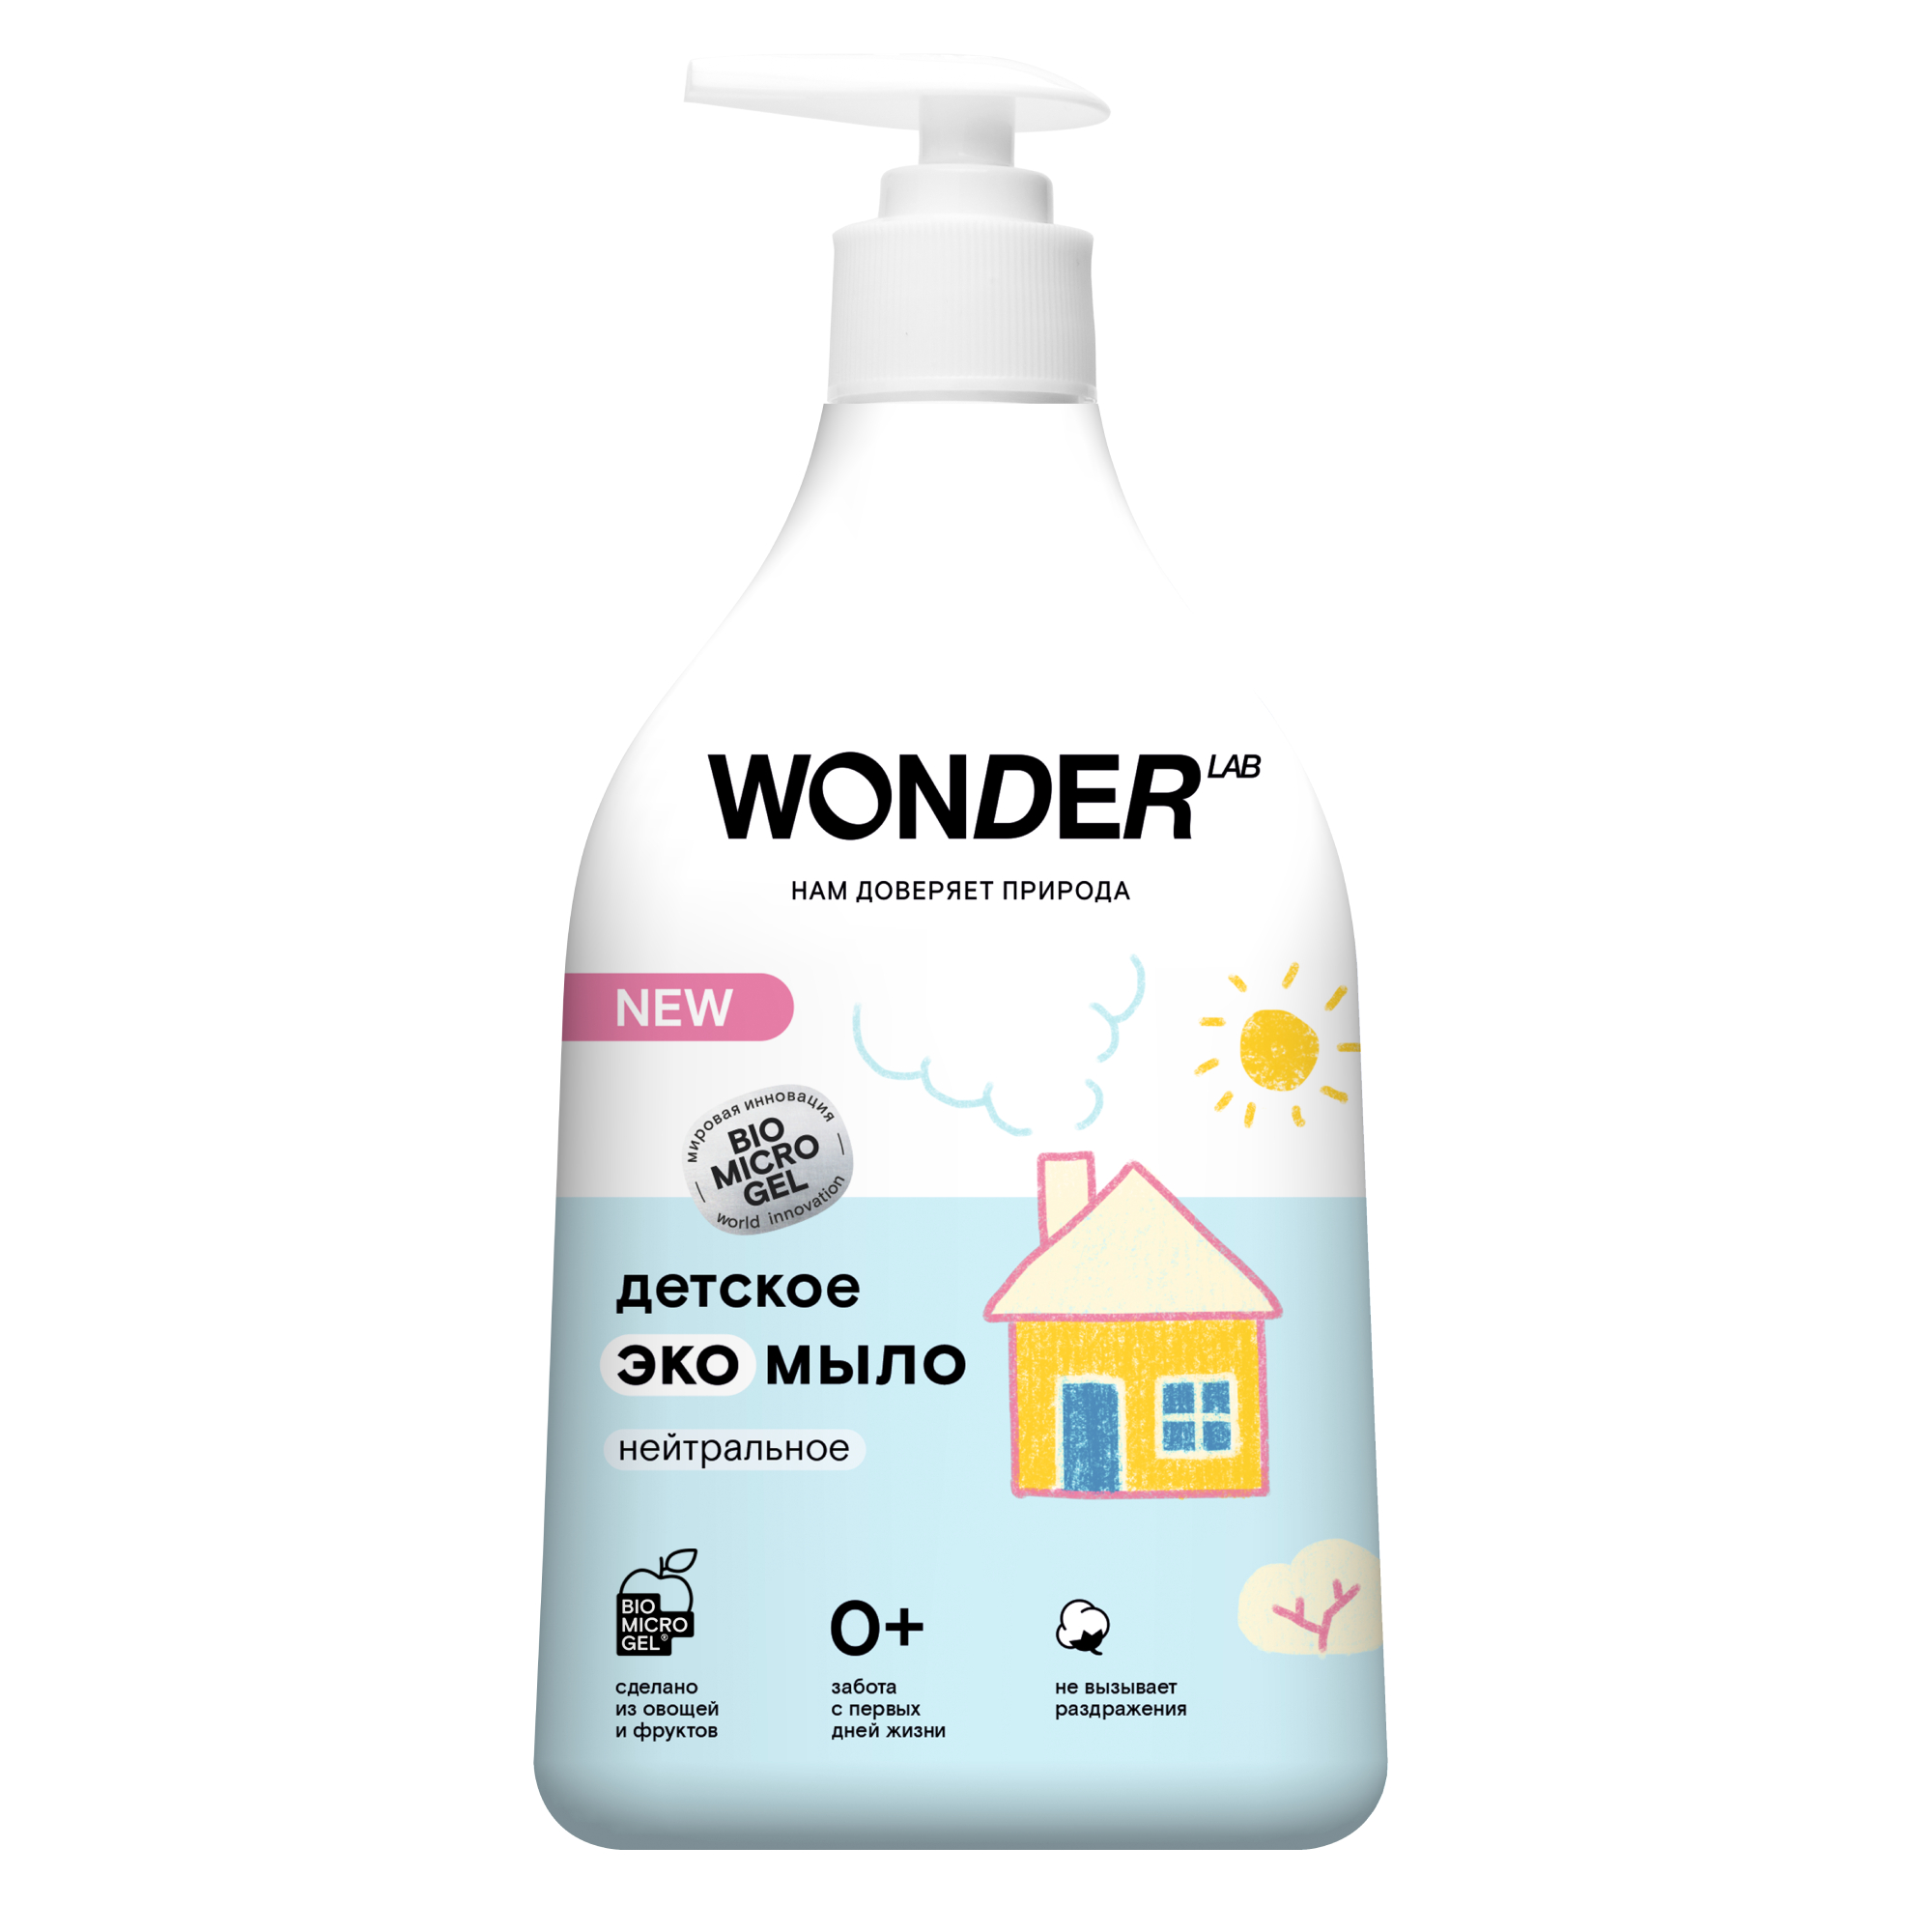 Детское жидкое мыло WONDER LAB, экологичное, без запаха, 540 мл детское жидкое мыло ооо рудез